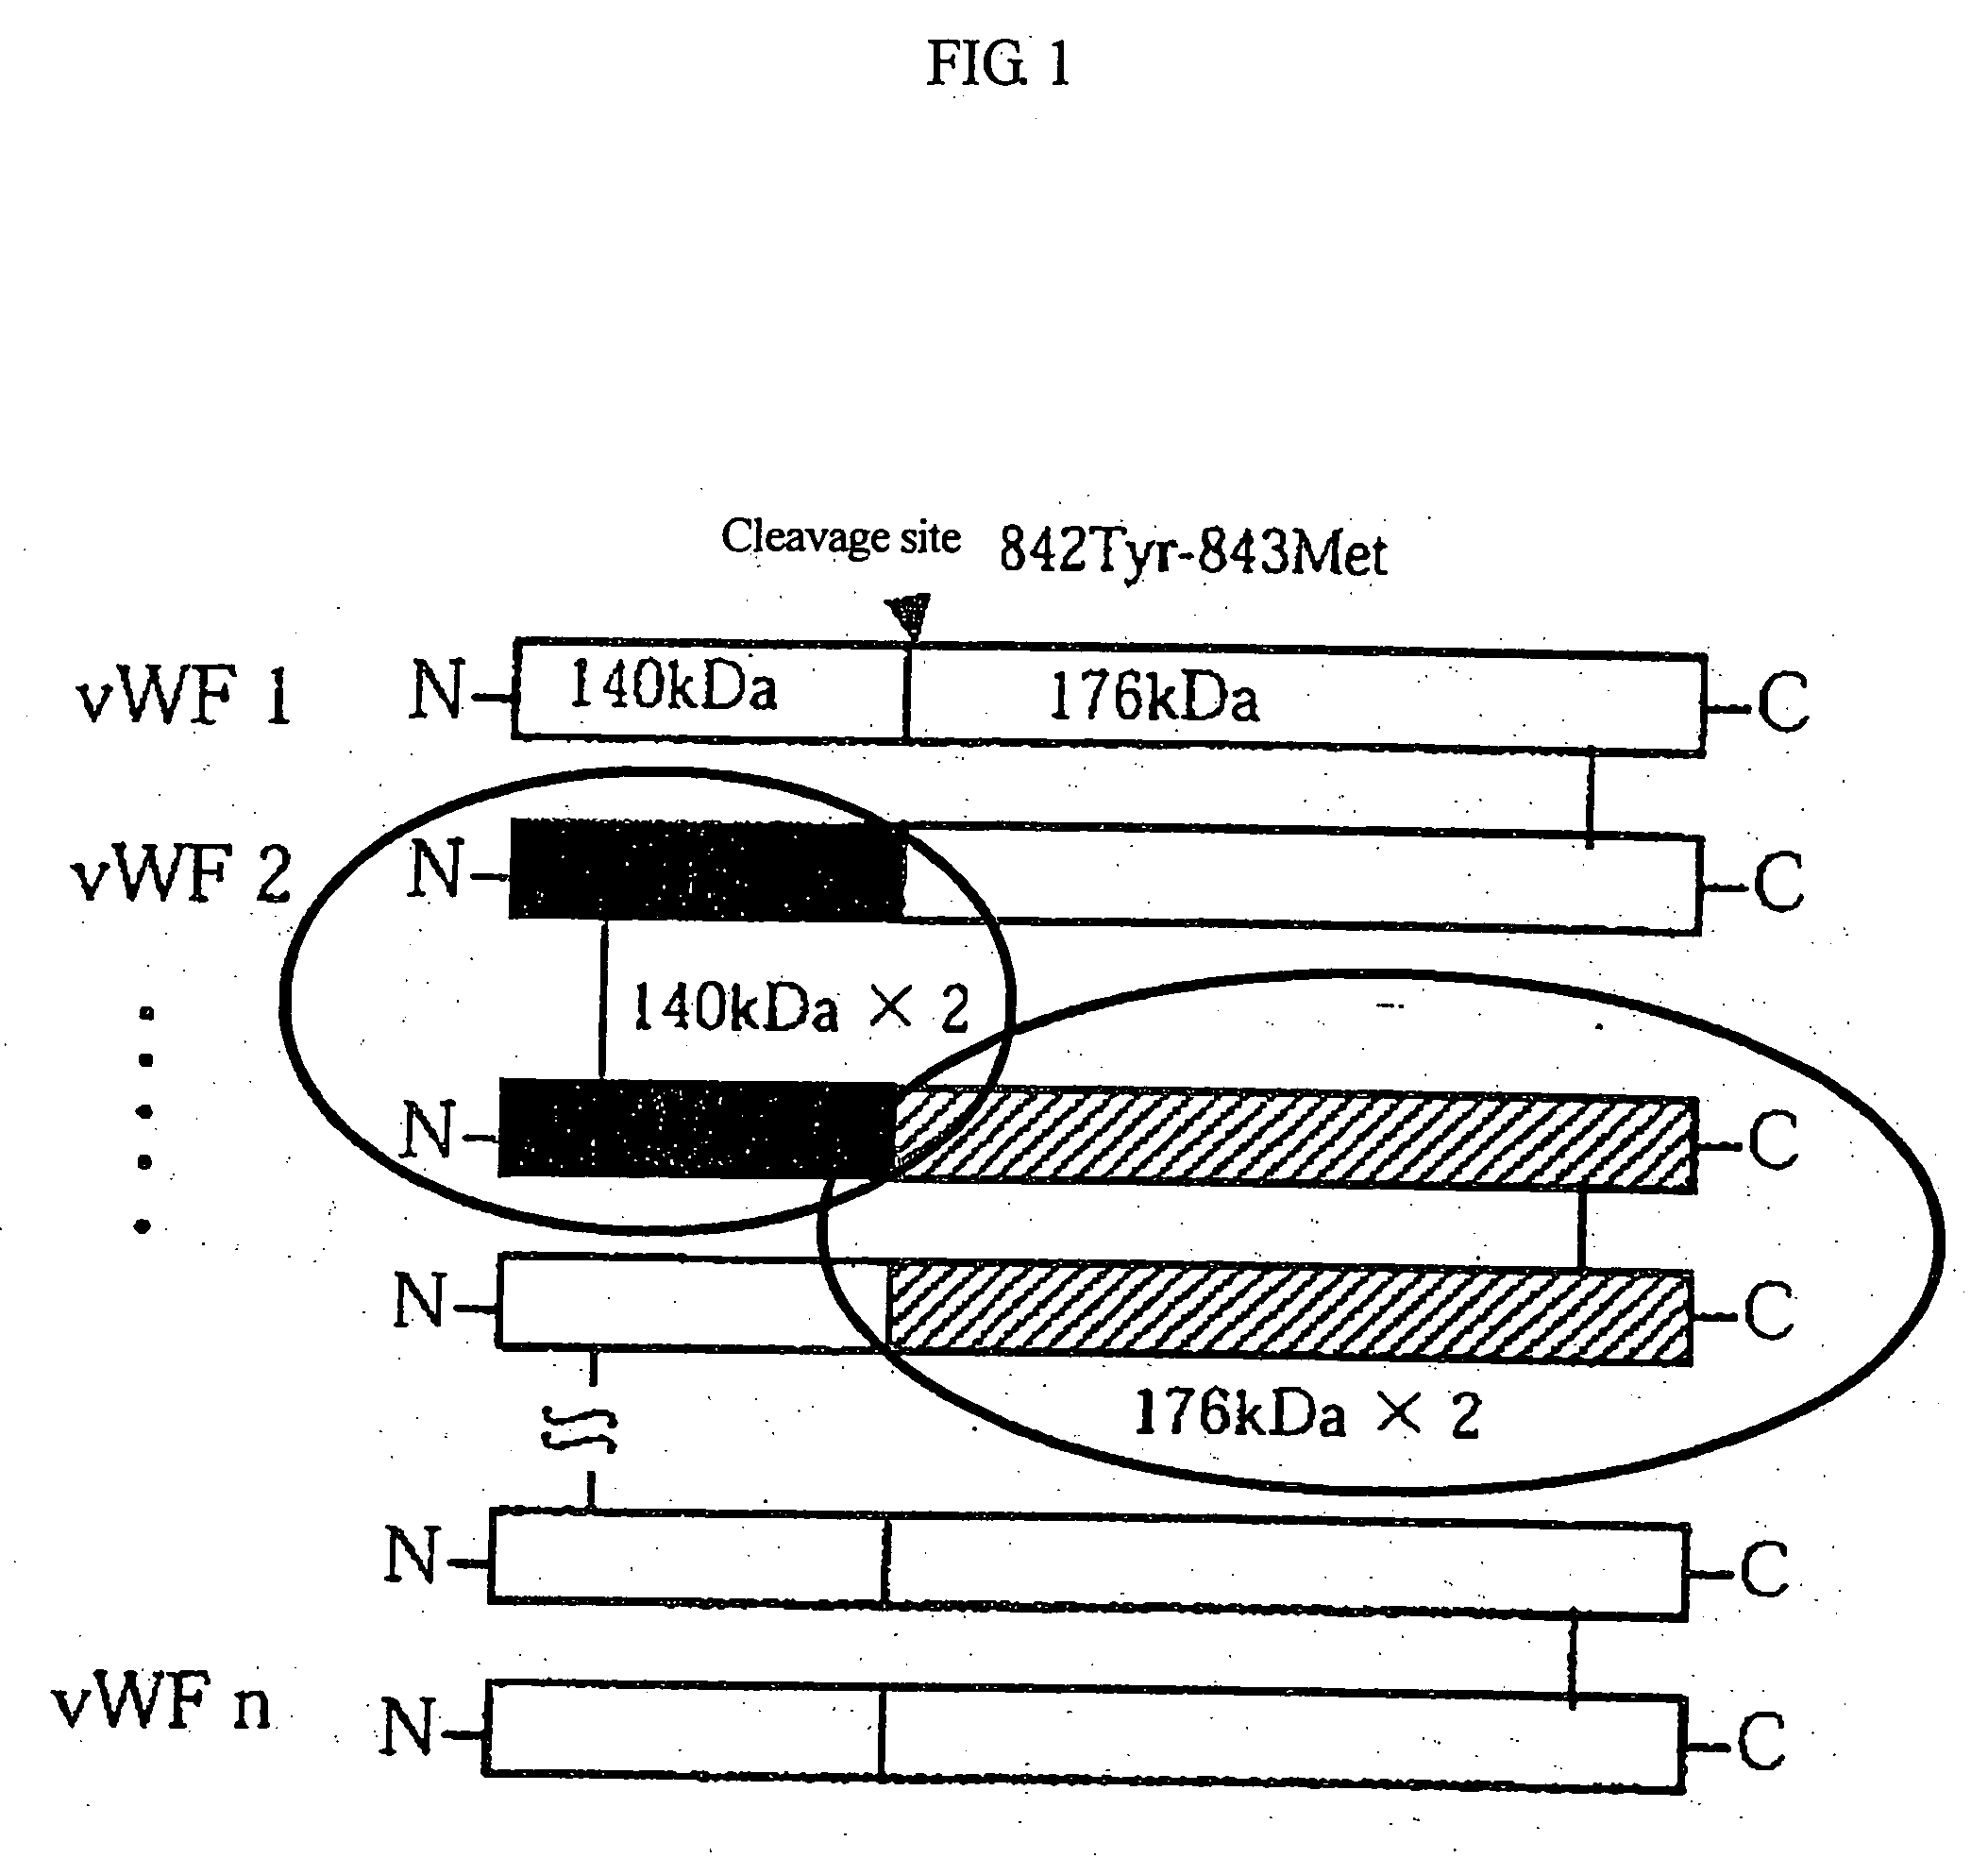 von Willebrand factor (vWF) - cleaving protease